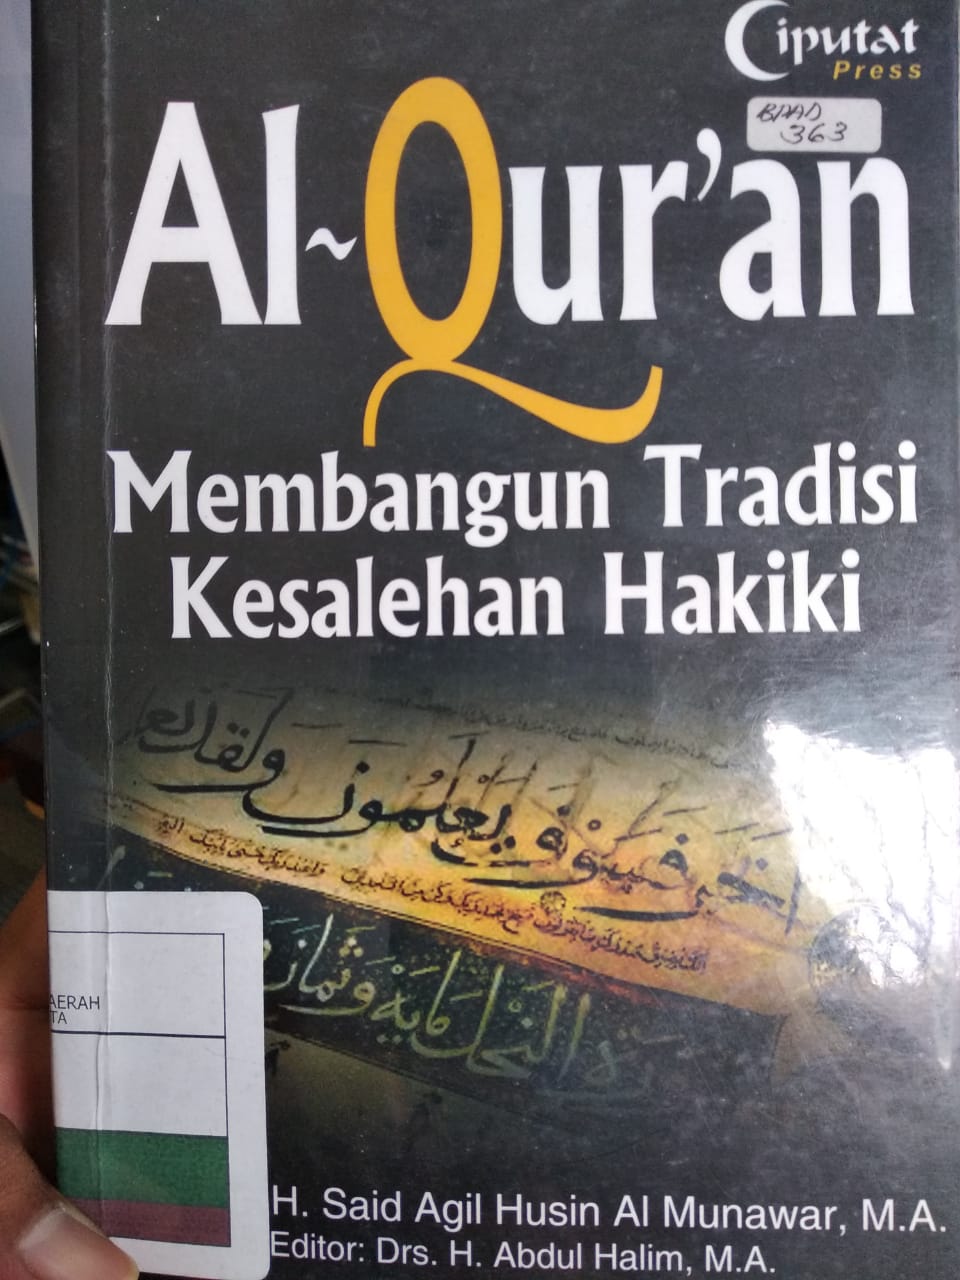 Al-Qur'an membangun tradisi kesalehan hakiki